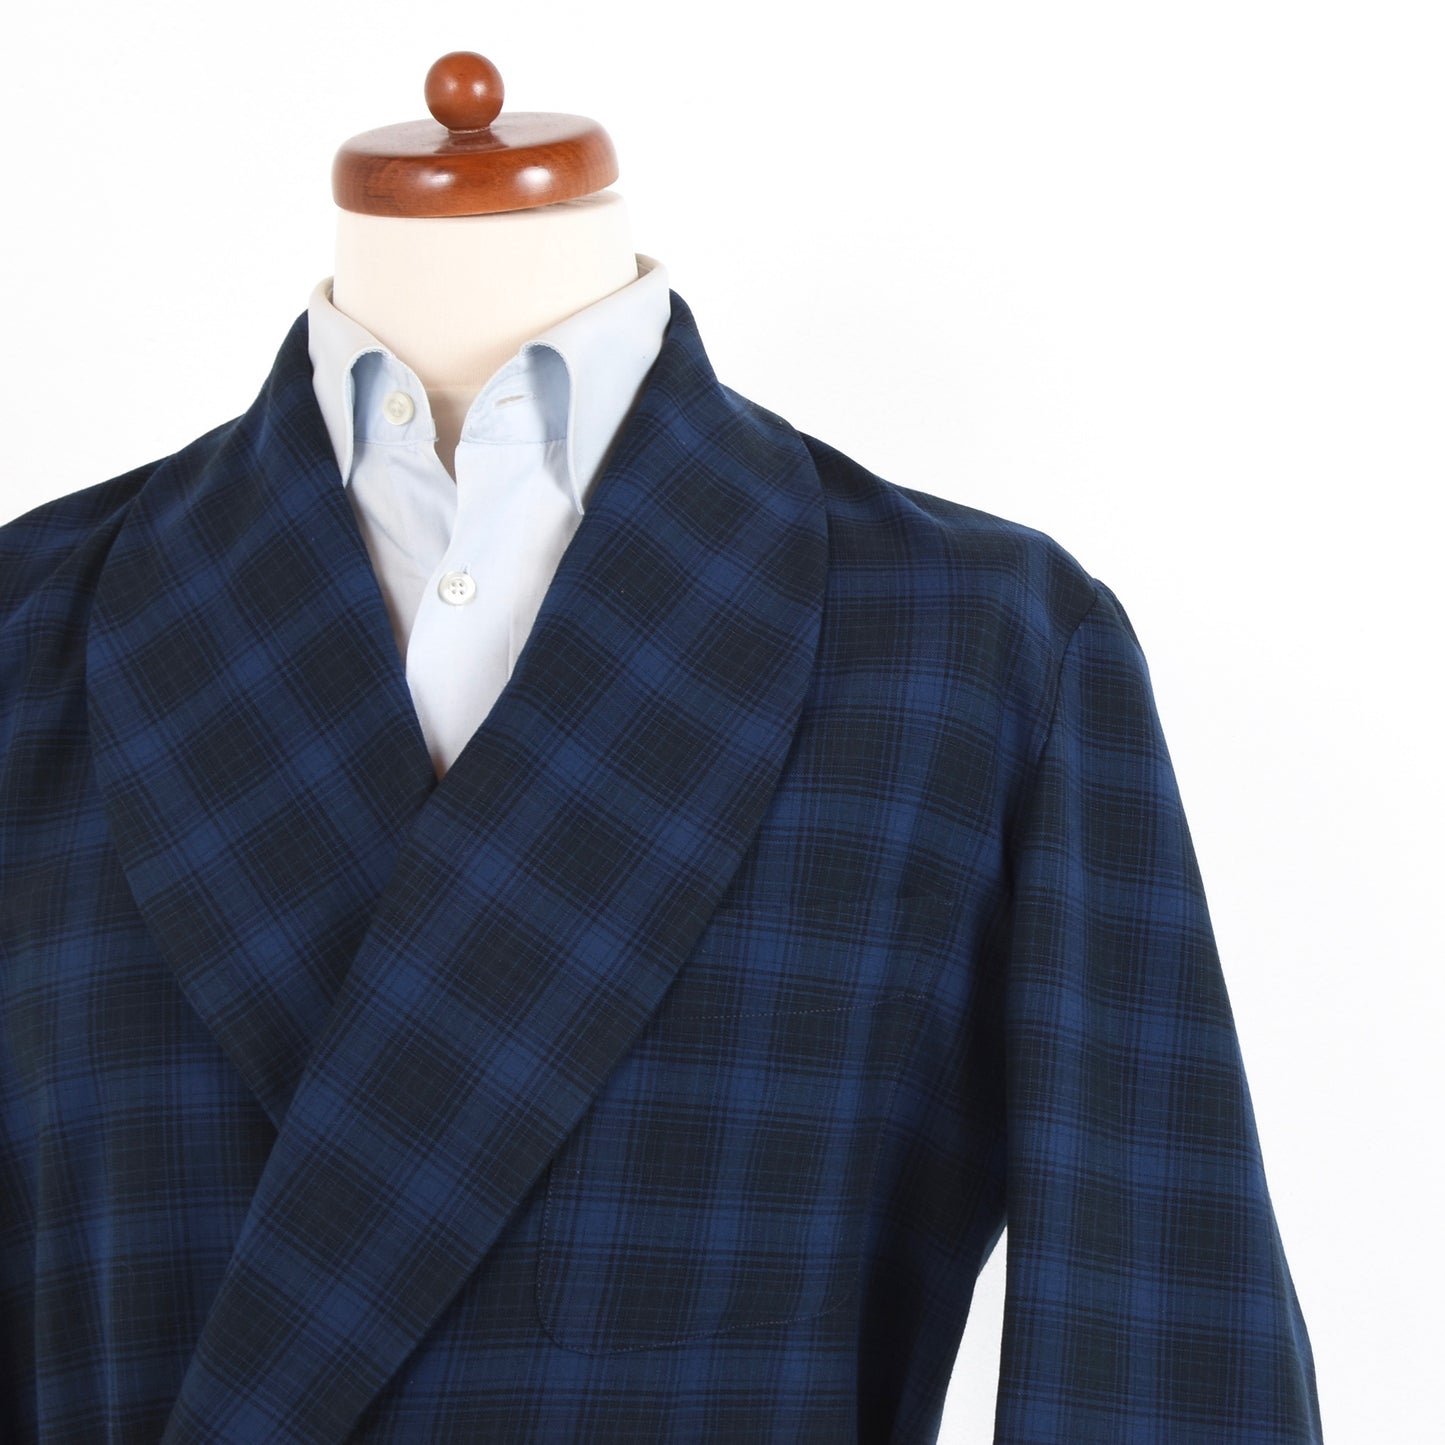 Vintage Schalkragen Robe Größe 52 - blau kariert